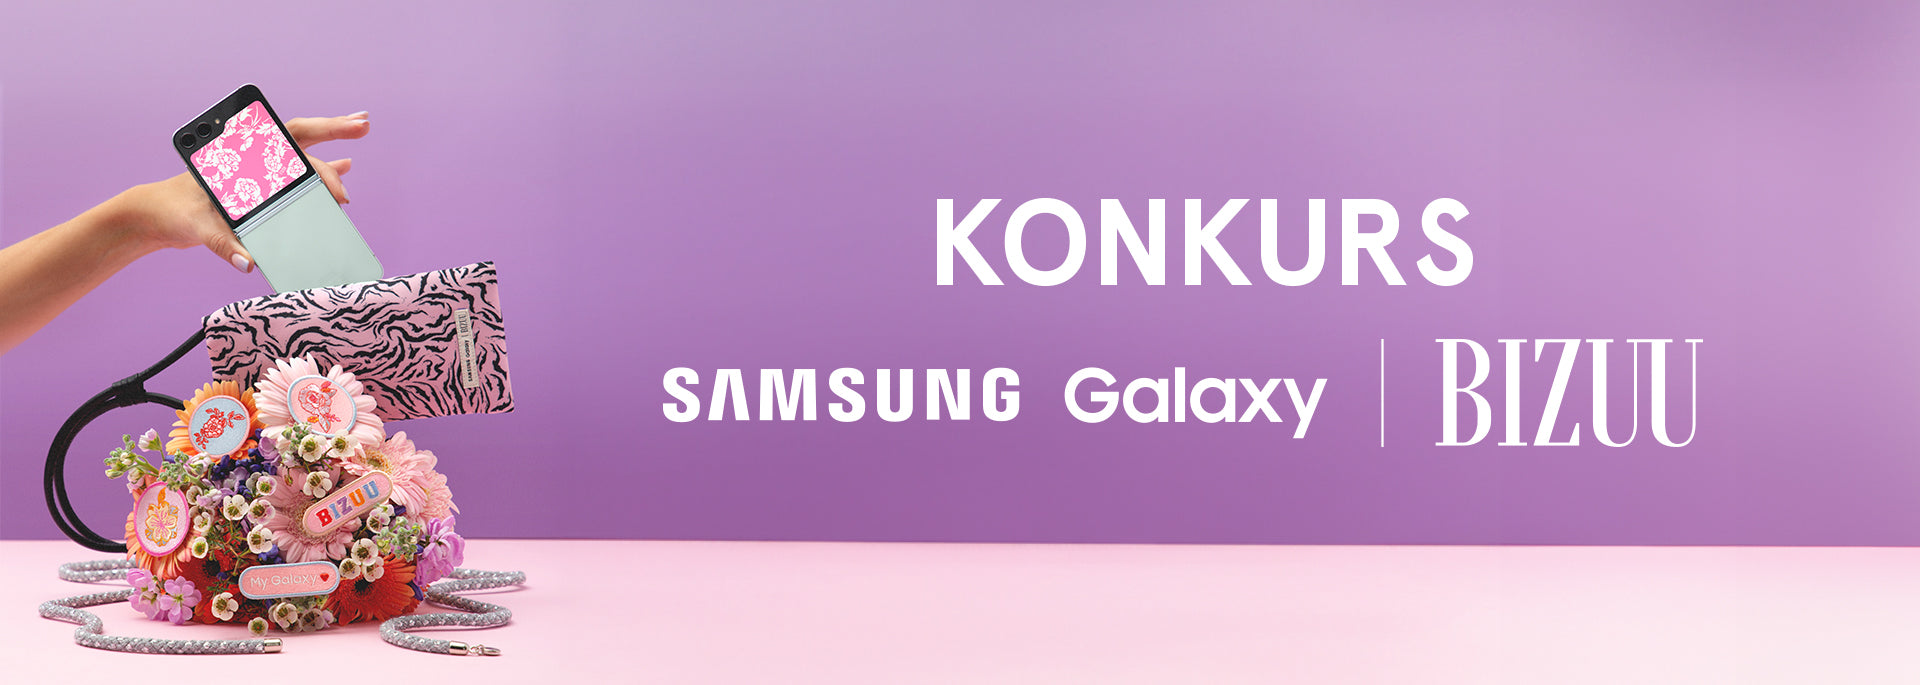 Regulamin Konkursu „BIZUU x Samsung Galaxy”